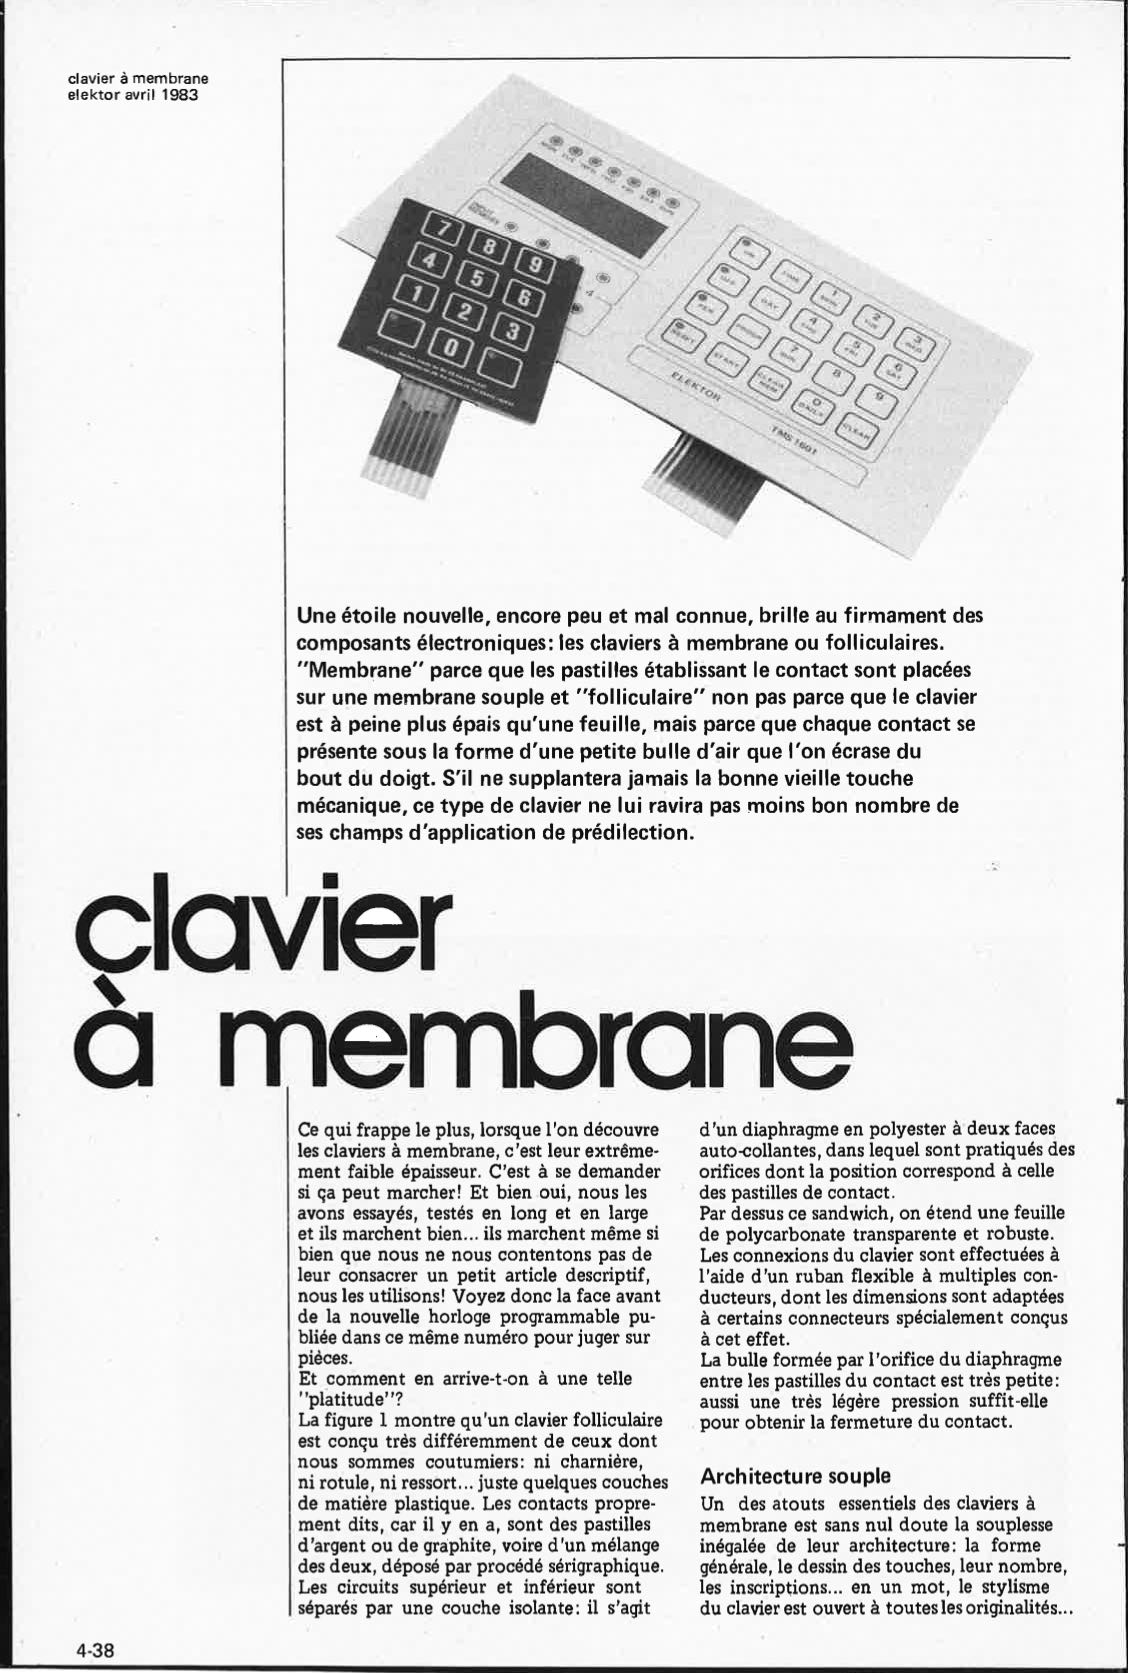 clavier à membrane